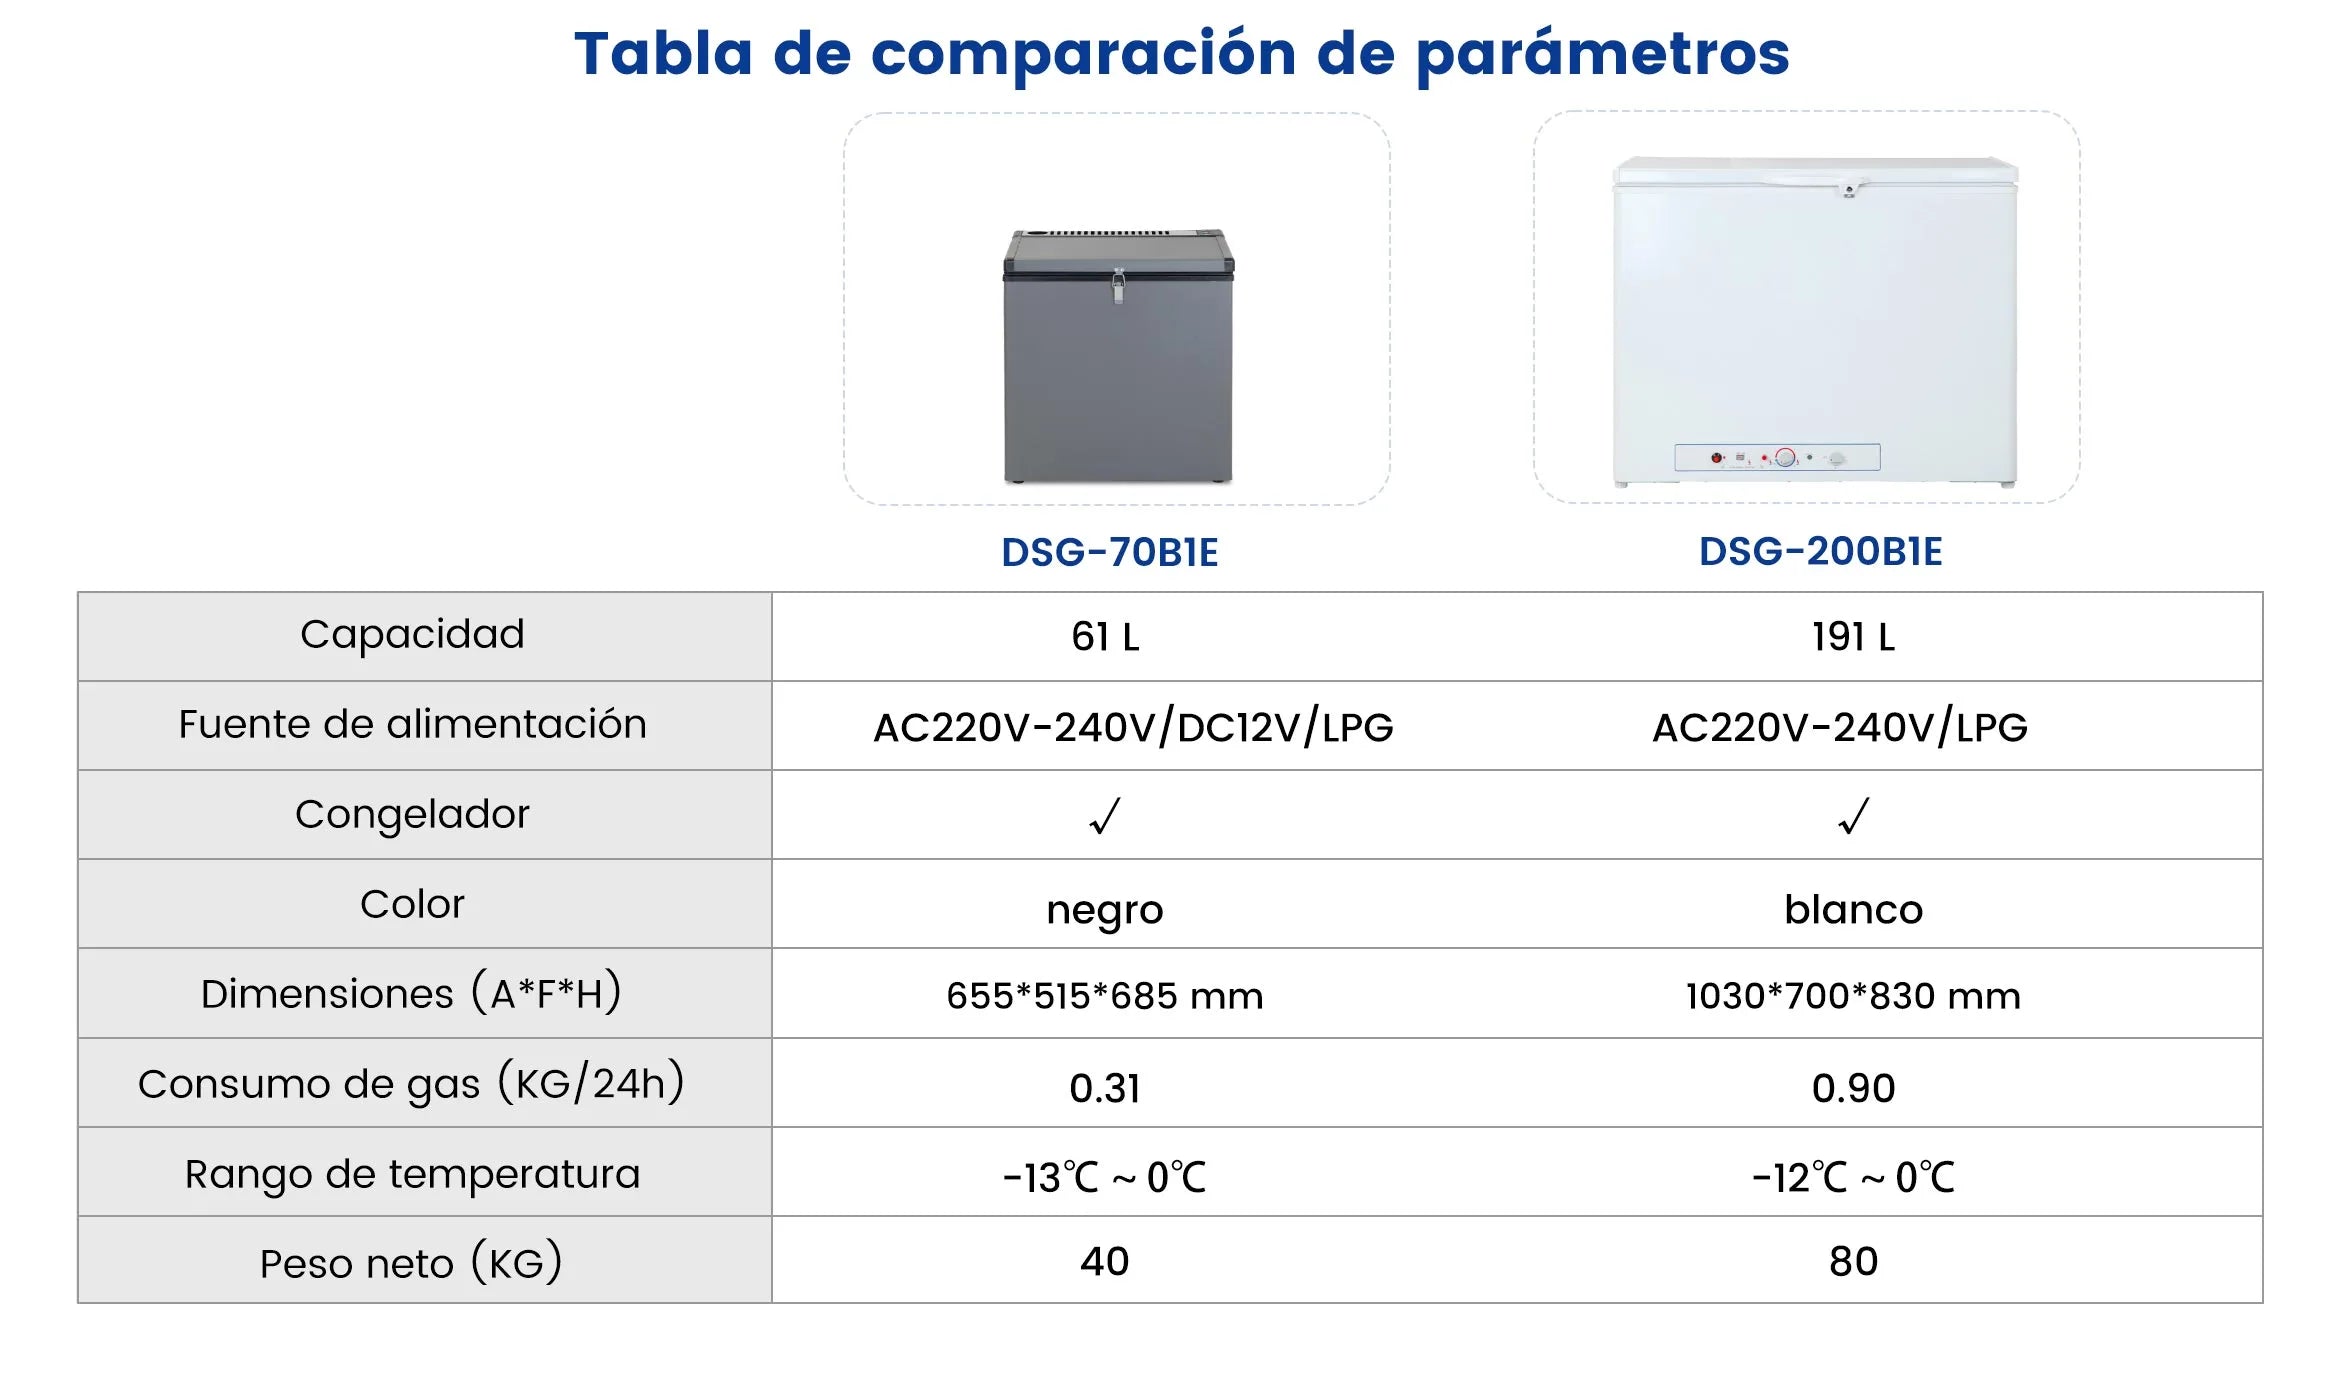 DSG-70B1E Tabla de comparación de parámetros